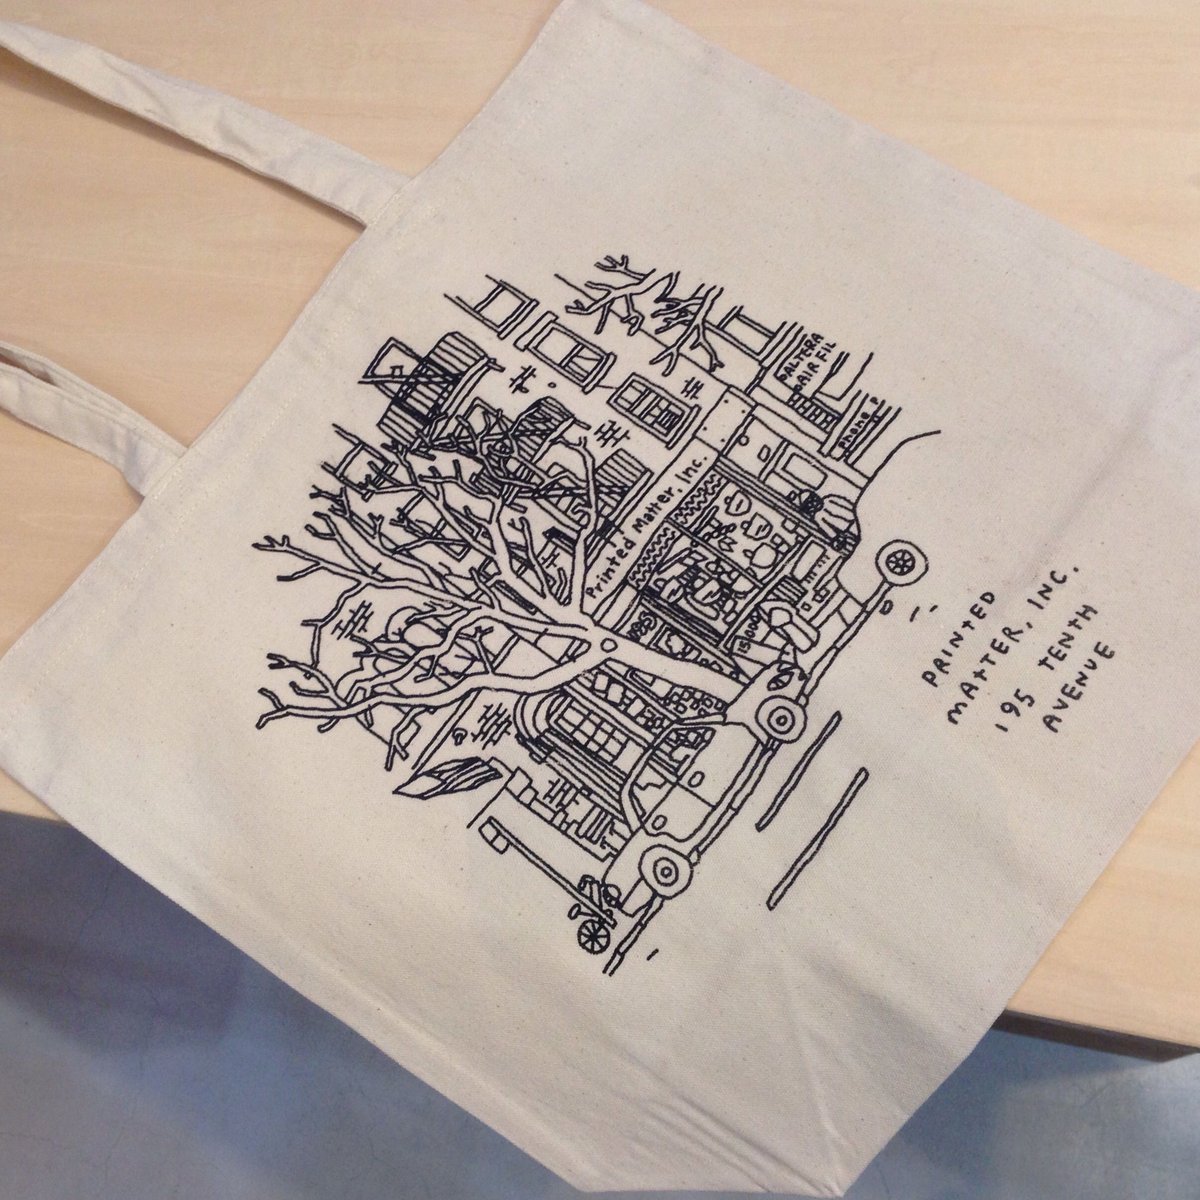 Printed Matter Tote Bag By Jason Polan